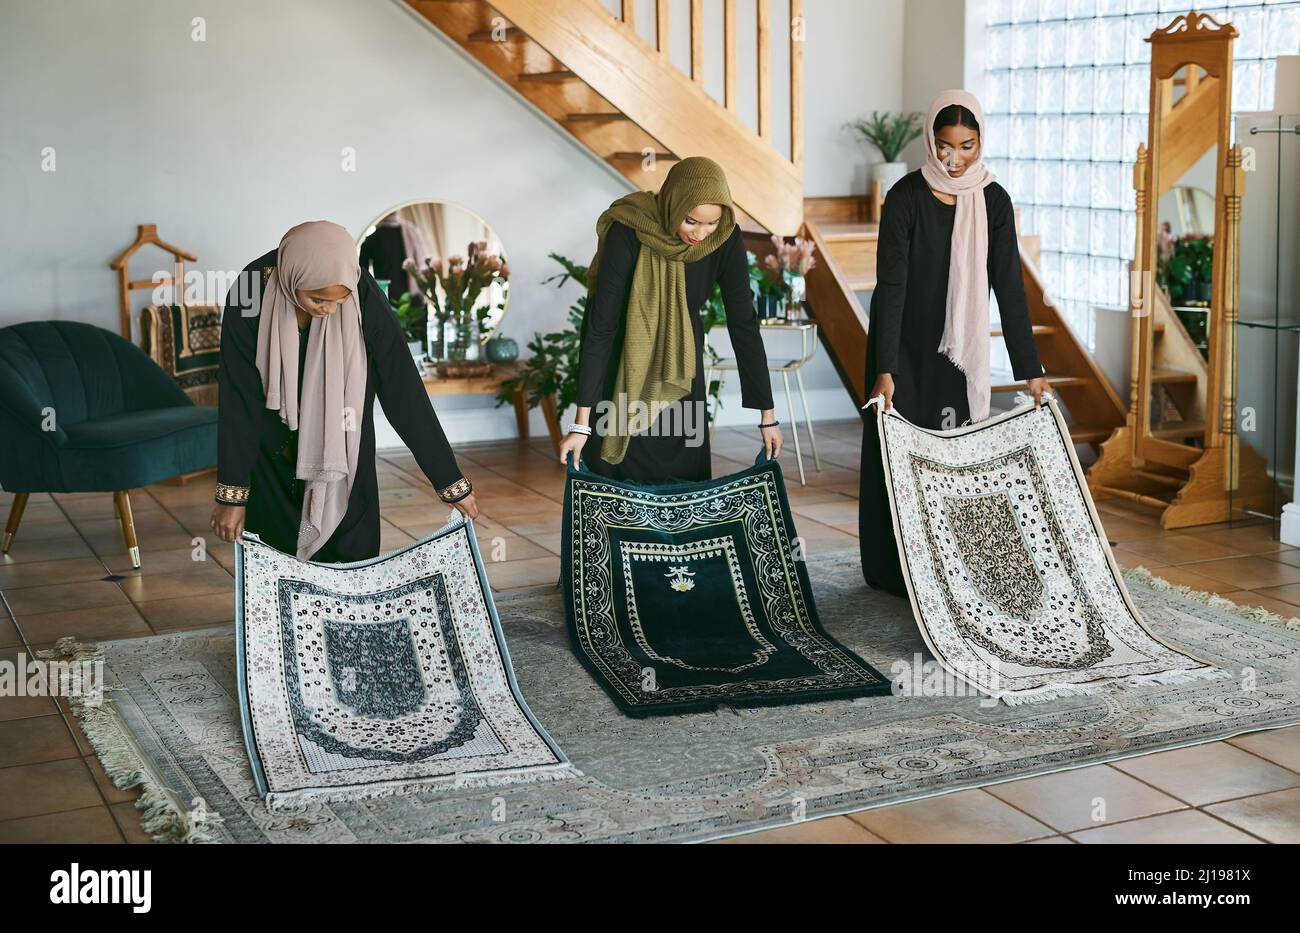 La preparazione è importante. Shot di un gruppo di donne musulmane che posano i loro stuoie di preghiera in preparazione. Foto Stock